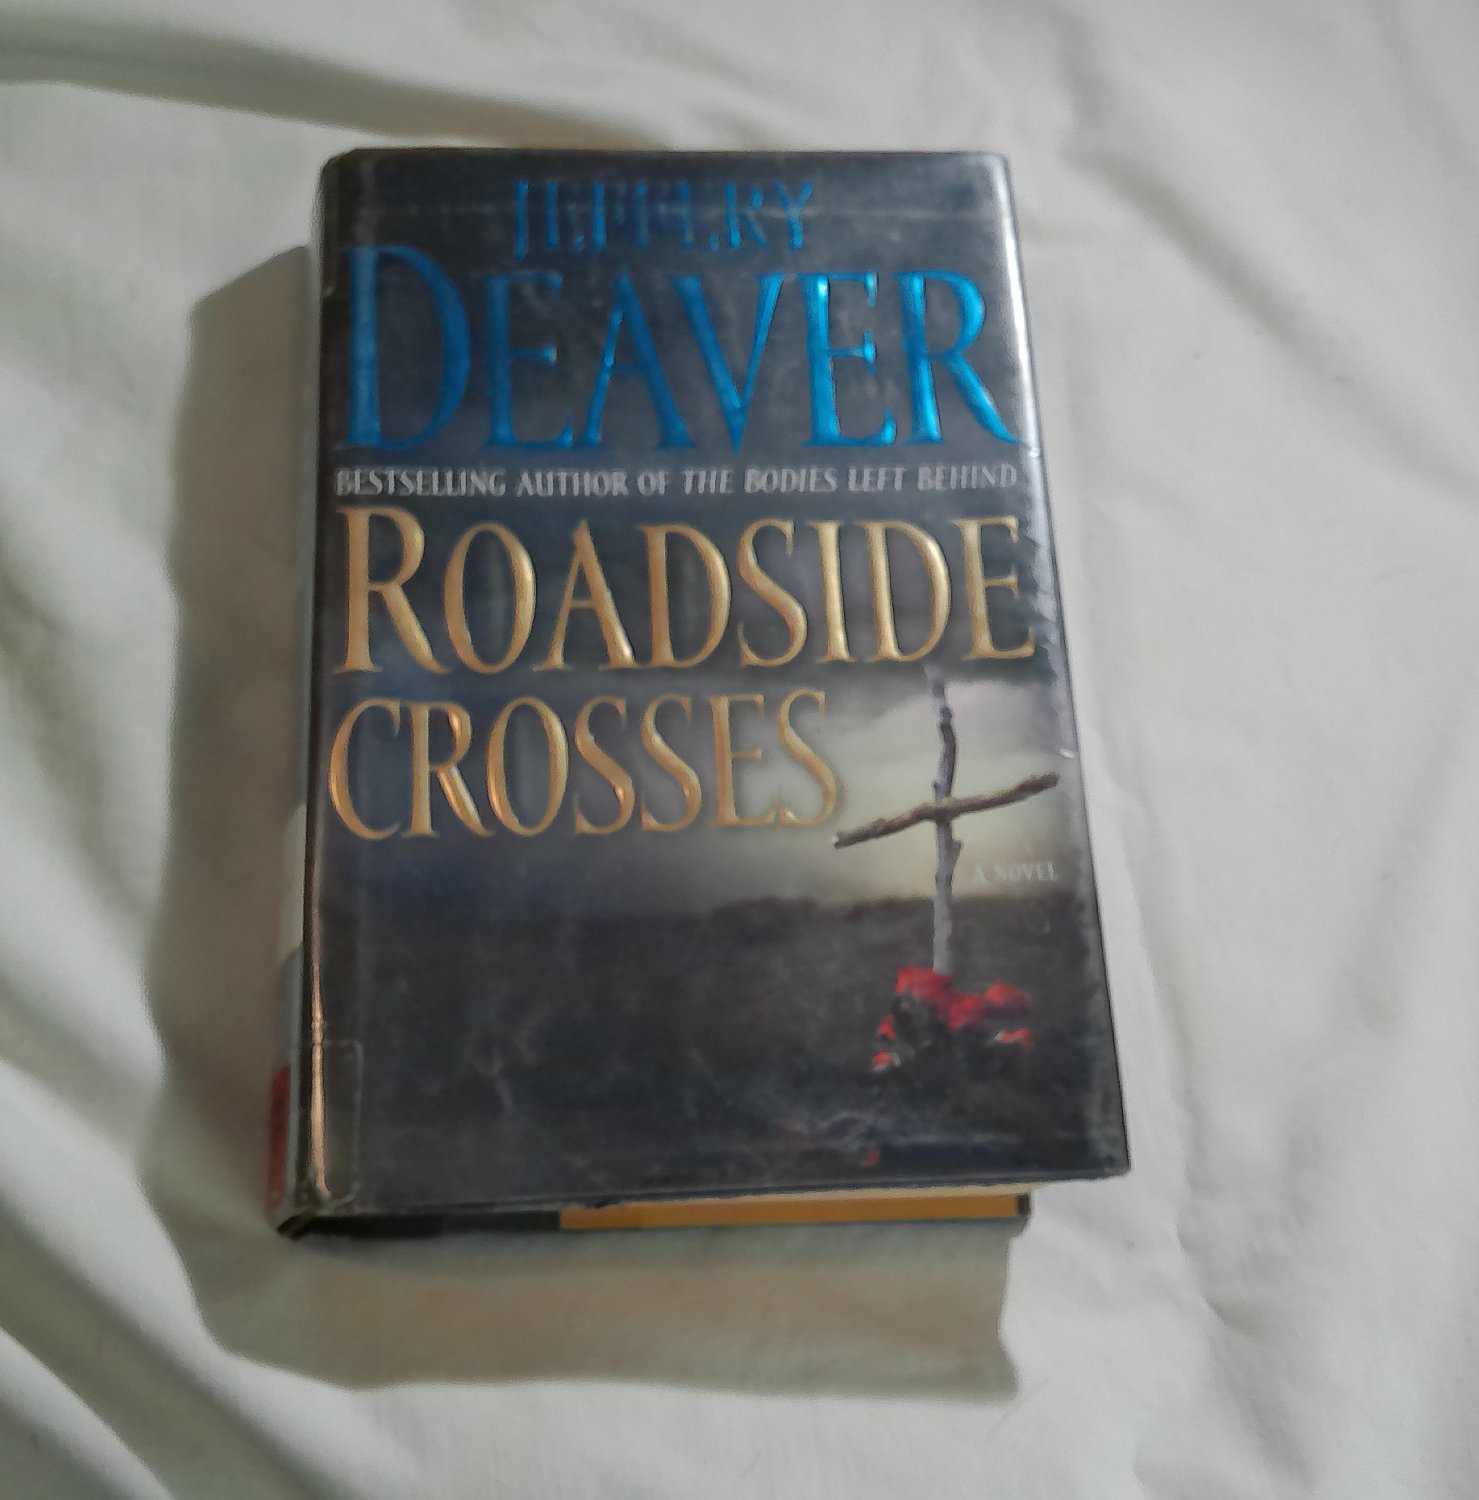 Roadside Crosses by Jeffery Deaver (2009) (191) Kathryn Dance #2, Mystery, Thriller HC